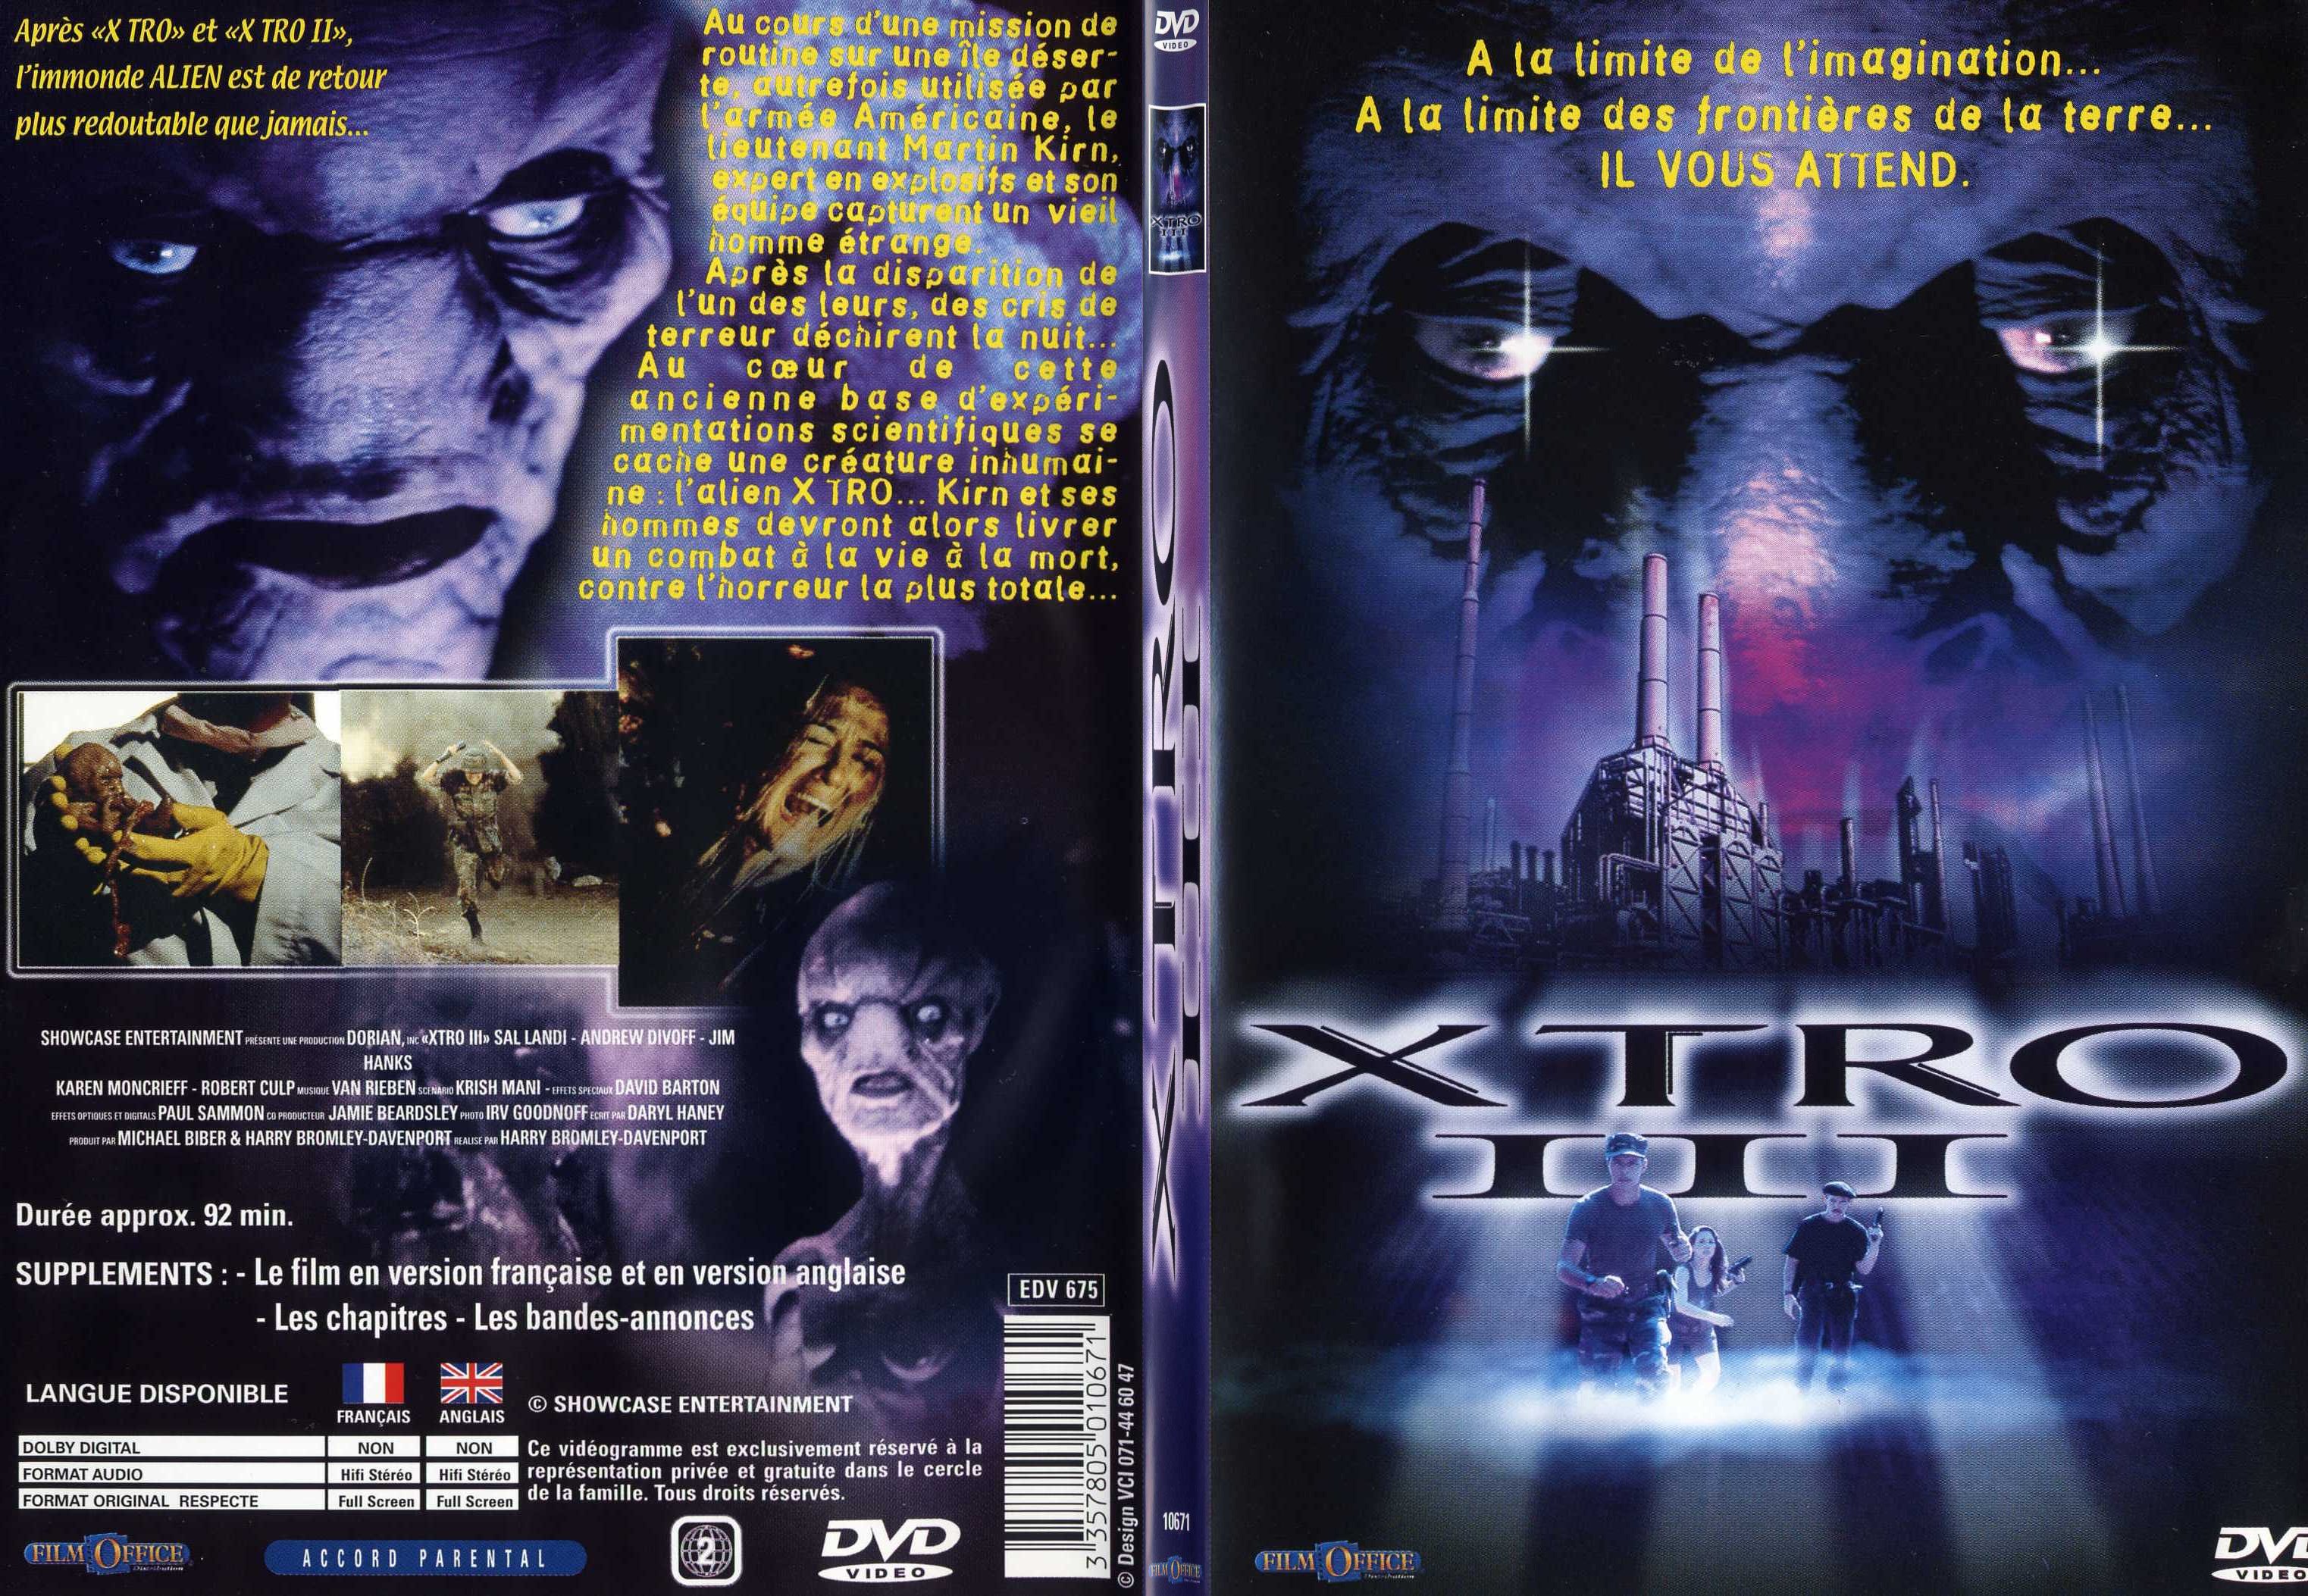 Jaquette DVD Xtro III - SLIM